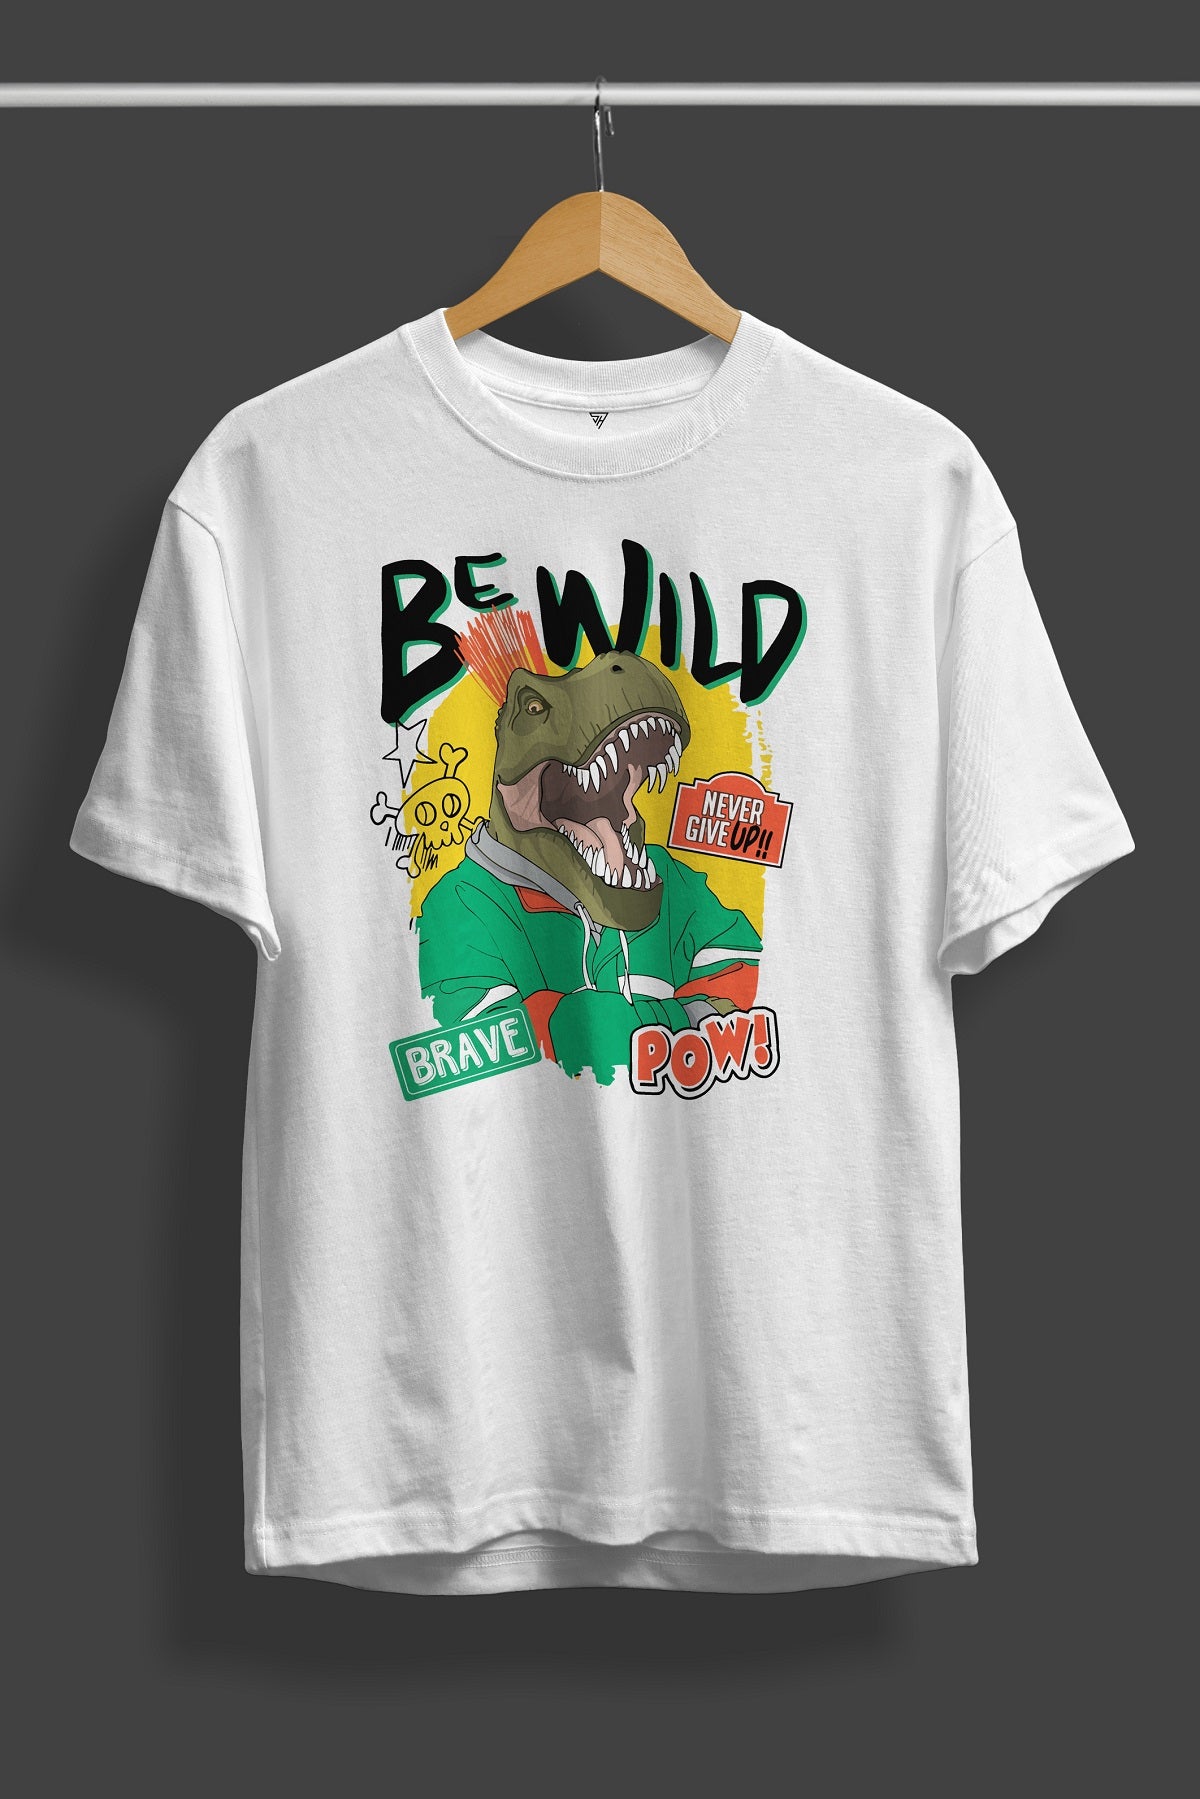 Be Wild White Printed T-Shirt